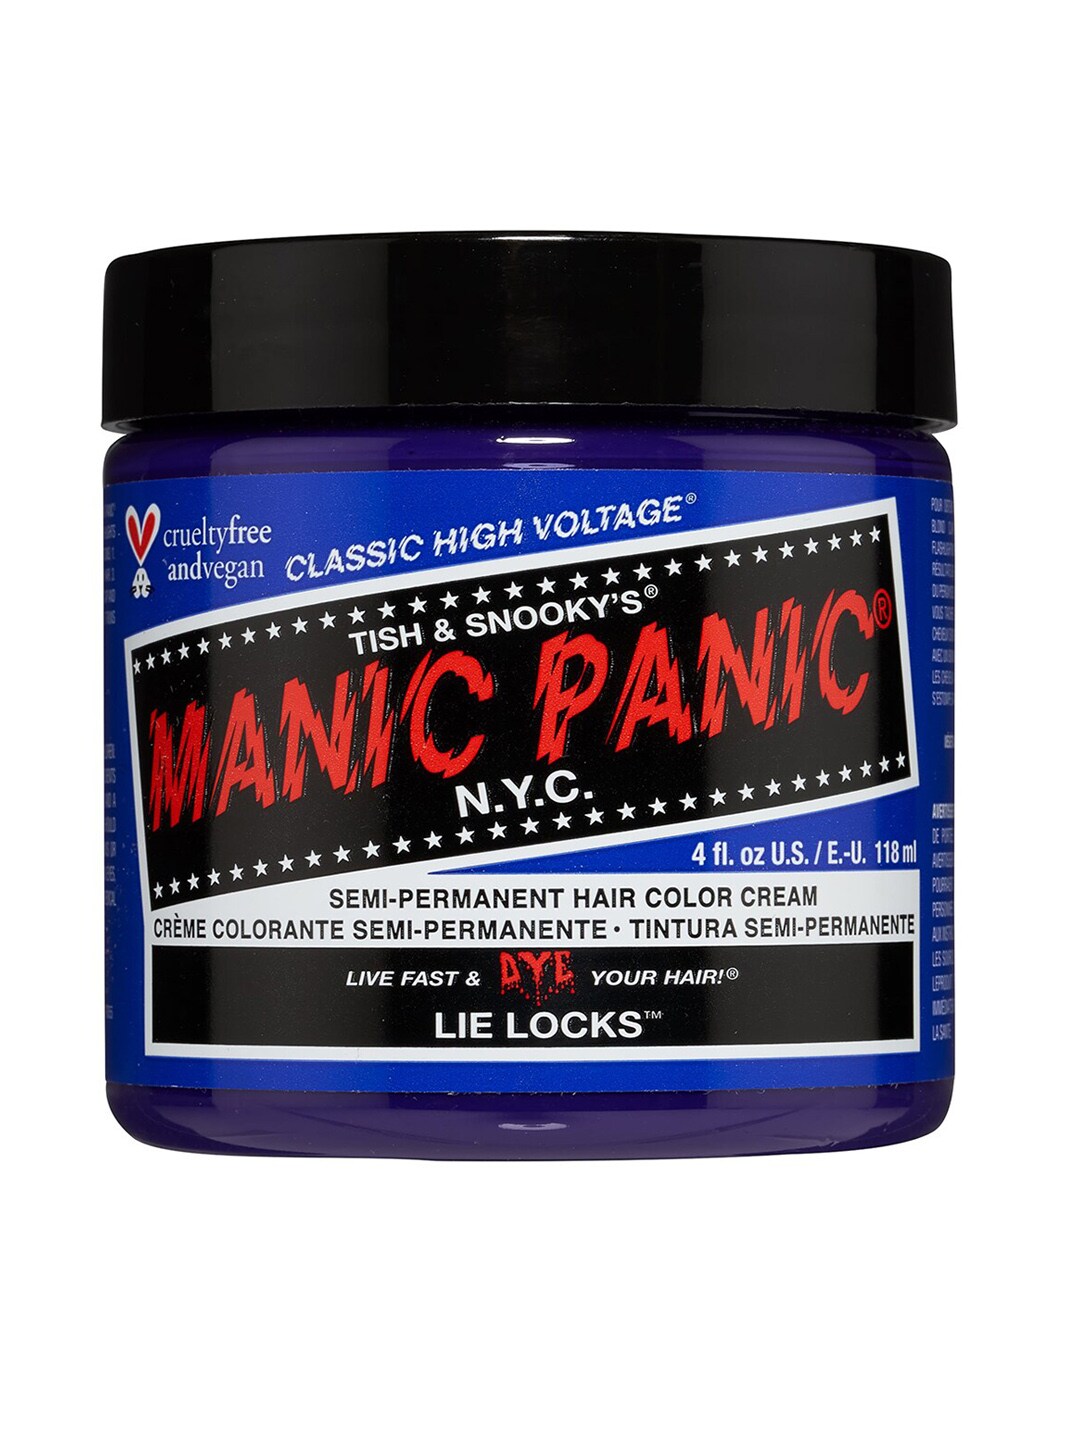 MANIC PANIC Classic High Voltage Semi-Permanent Hair Colour Cream - Lie Locks Price in India